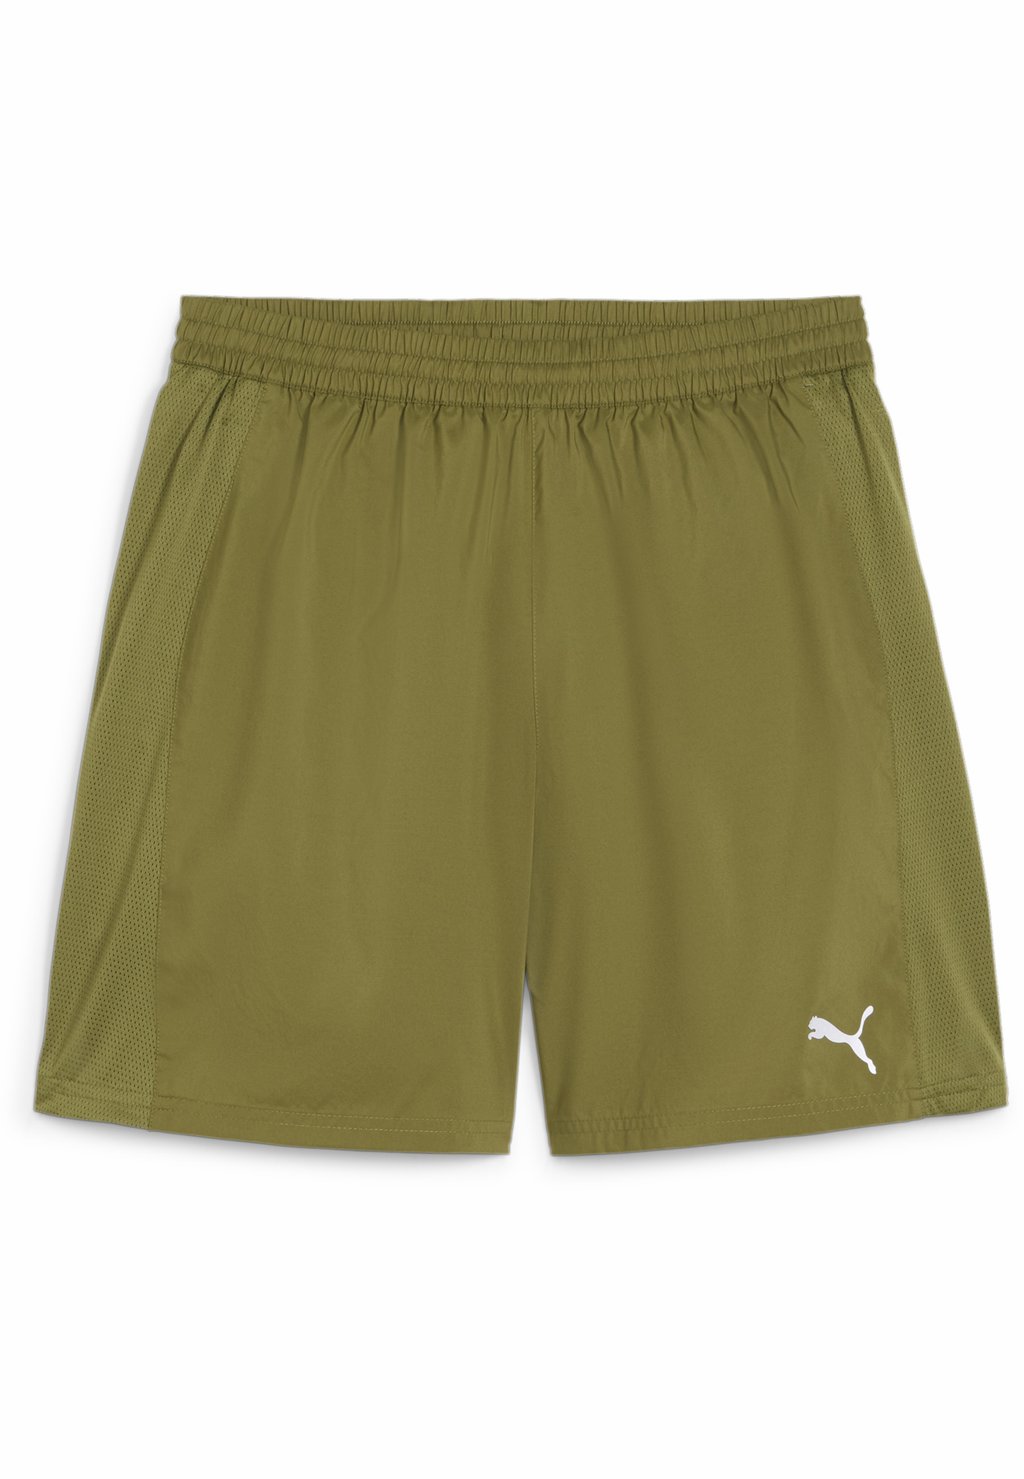 Спортивные шорты Puma, оливково-зелёные спортивные туфли на шнуровке mtng оливково зелёные